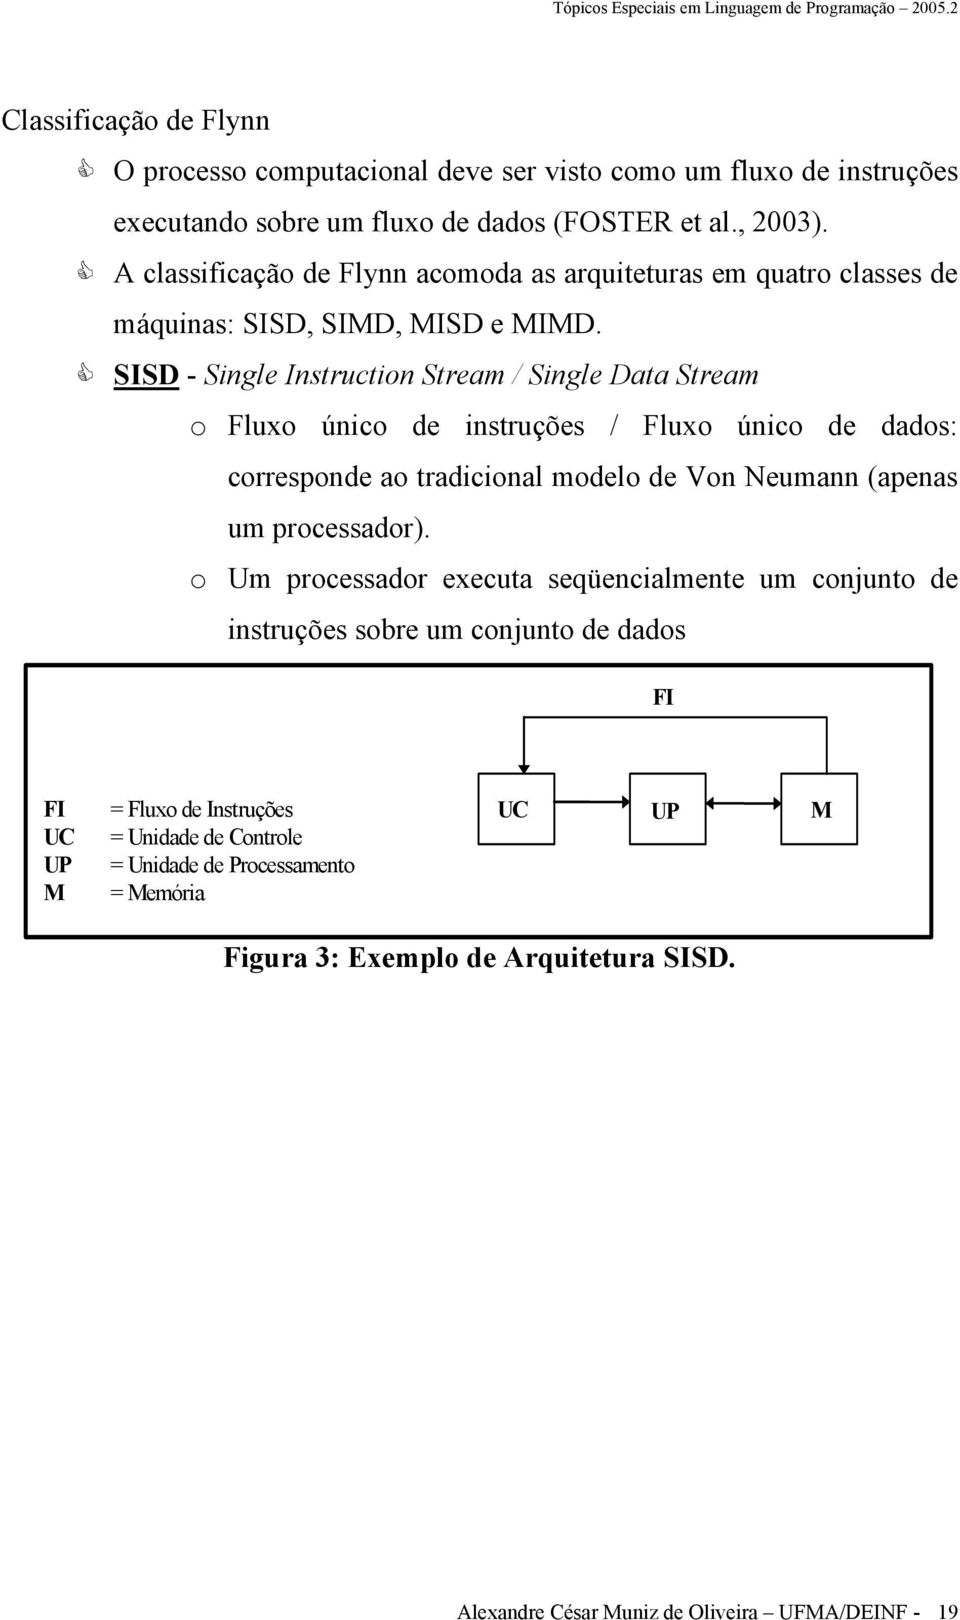 SISD - Single Instruction Stream / Single Data Stream o Fluxo único de instruções / Fluxo único de dados: corresponde ao tradicional modelo de Von Neumann (apenas um processador).